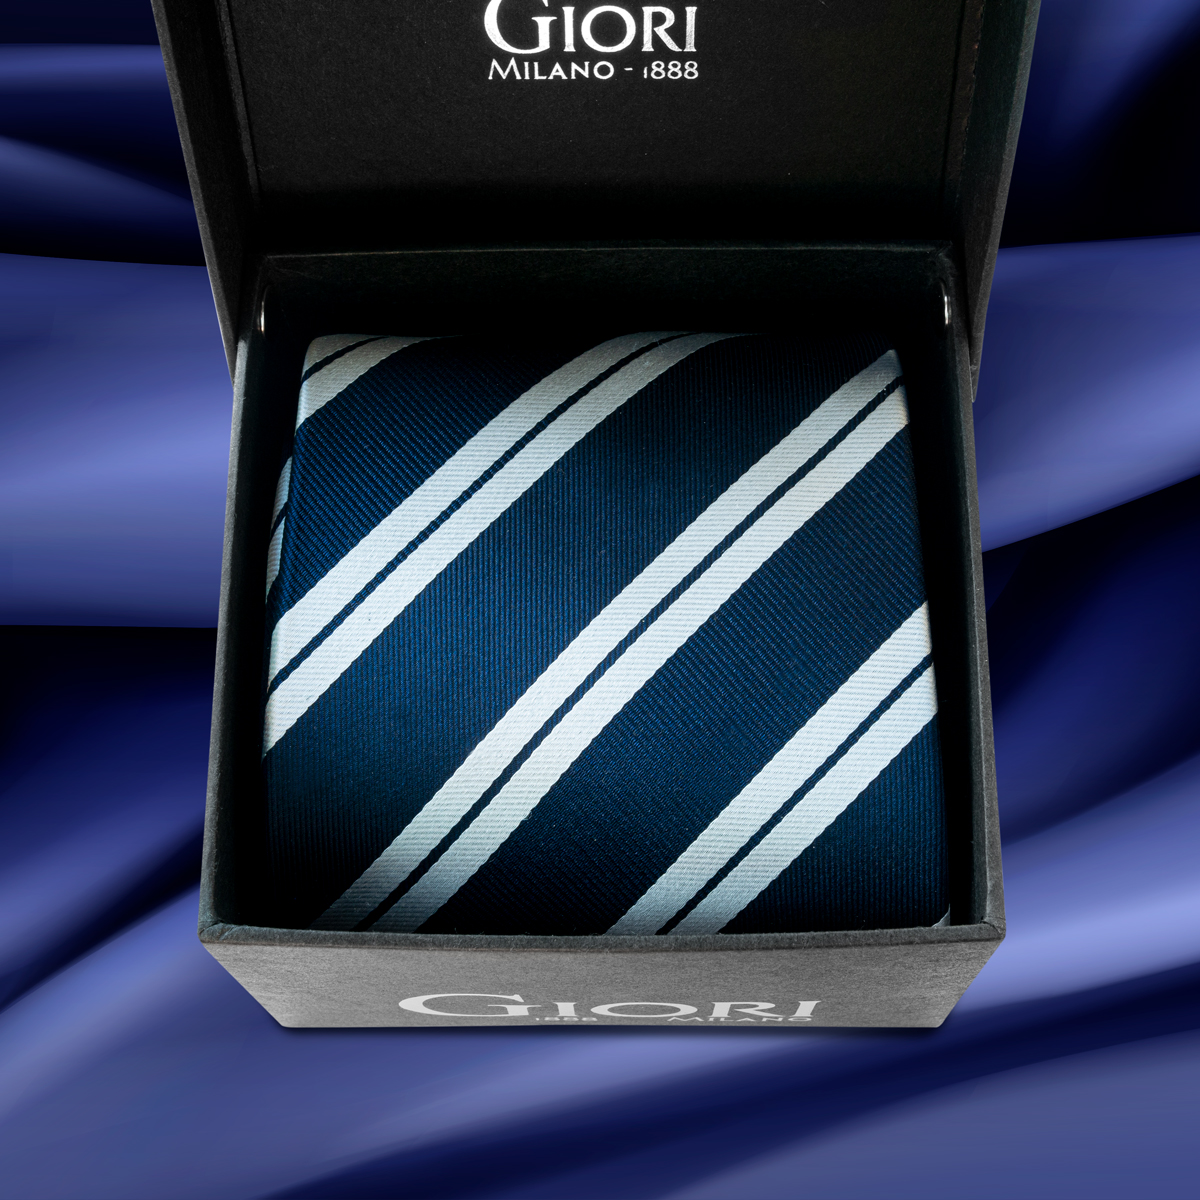 Hedvábná kravata Giori Milano RS0805, modro-bílá